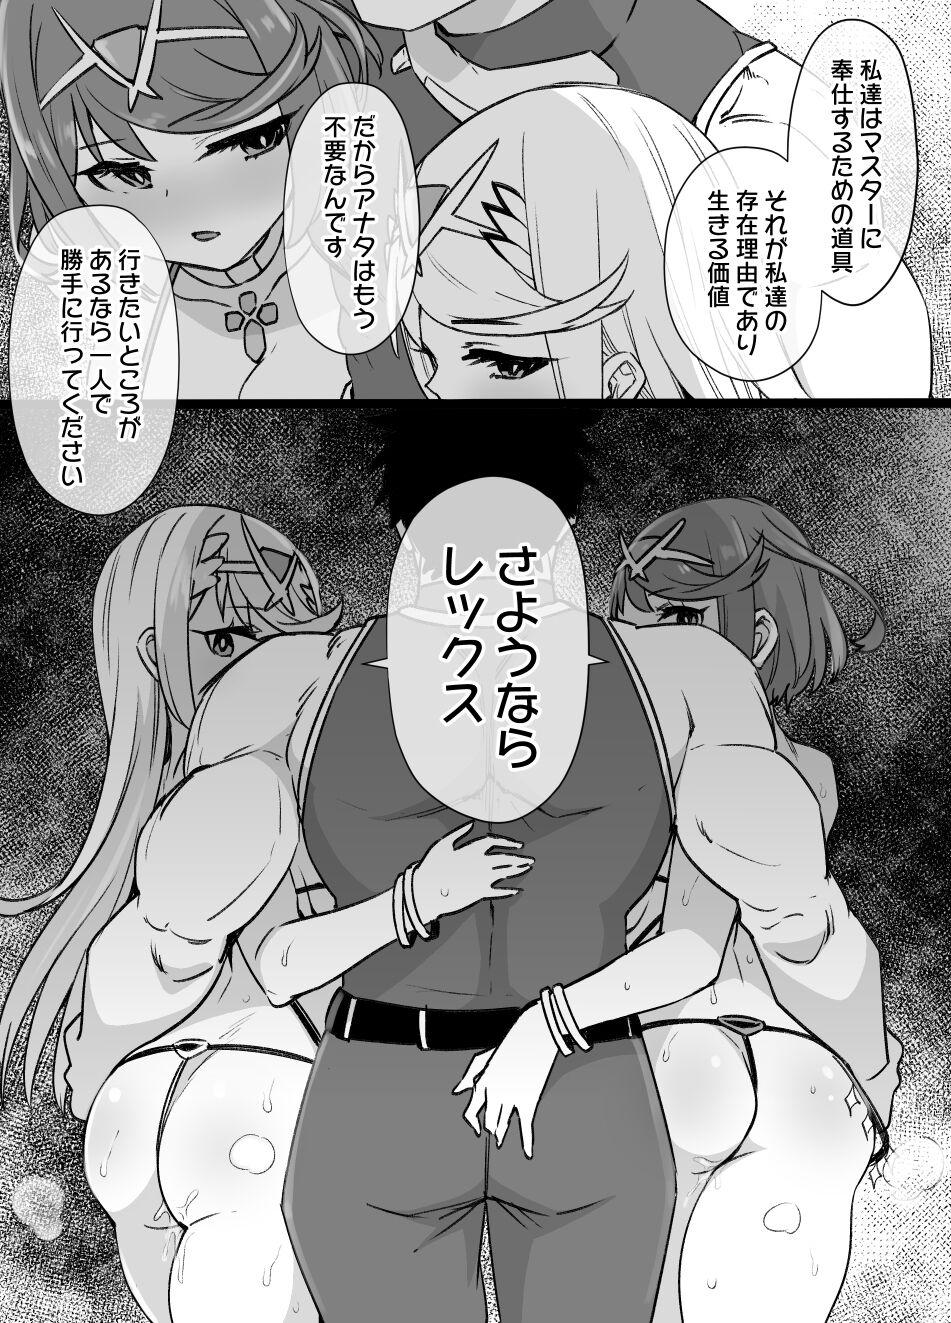 Homura & Hikari Sennou NTR Manga 14P 13